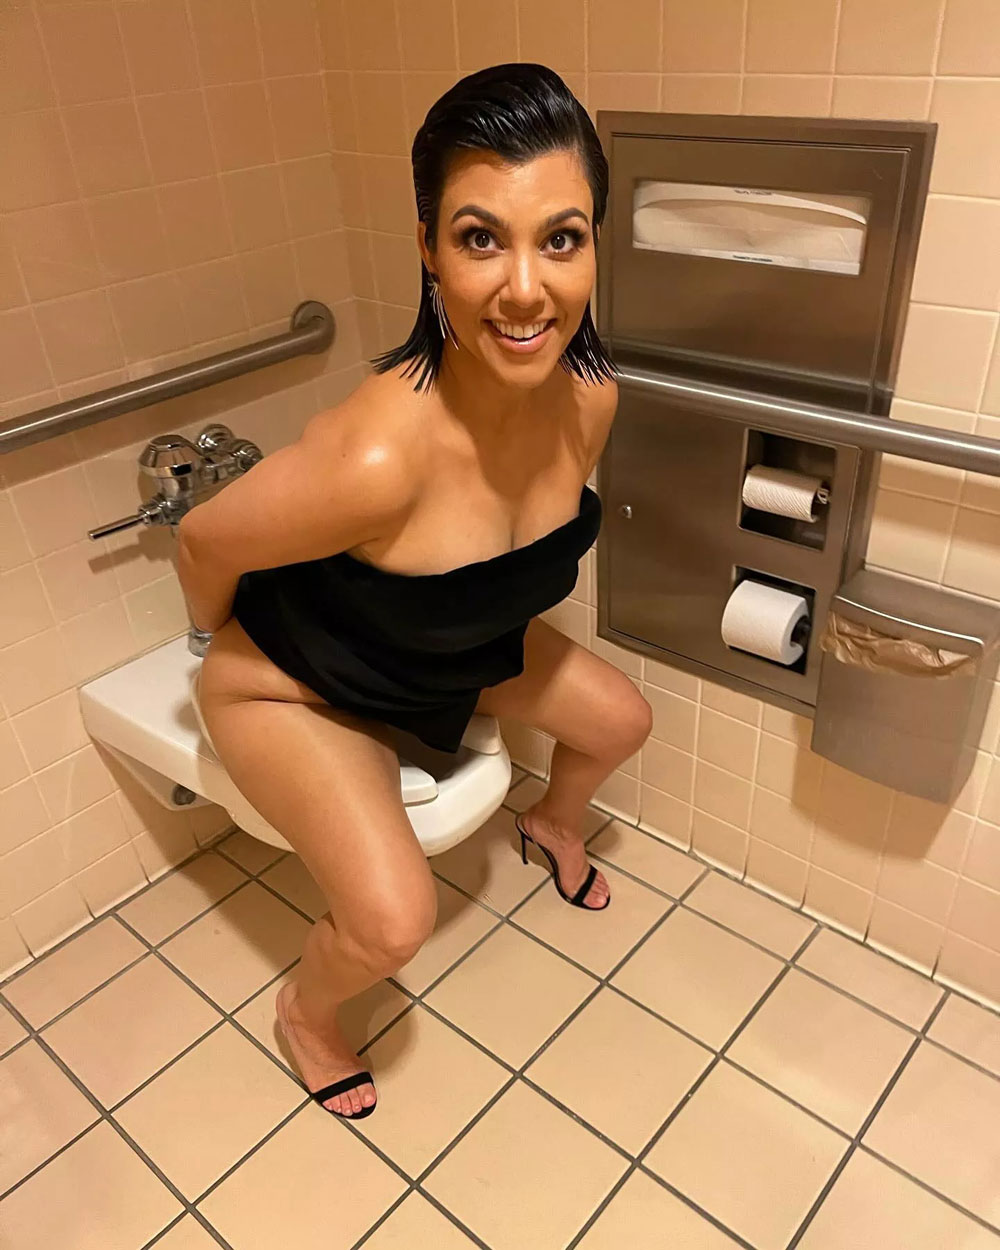 kourtney-kardashian-on-toilet